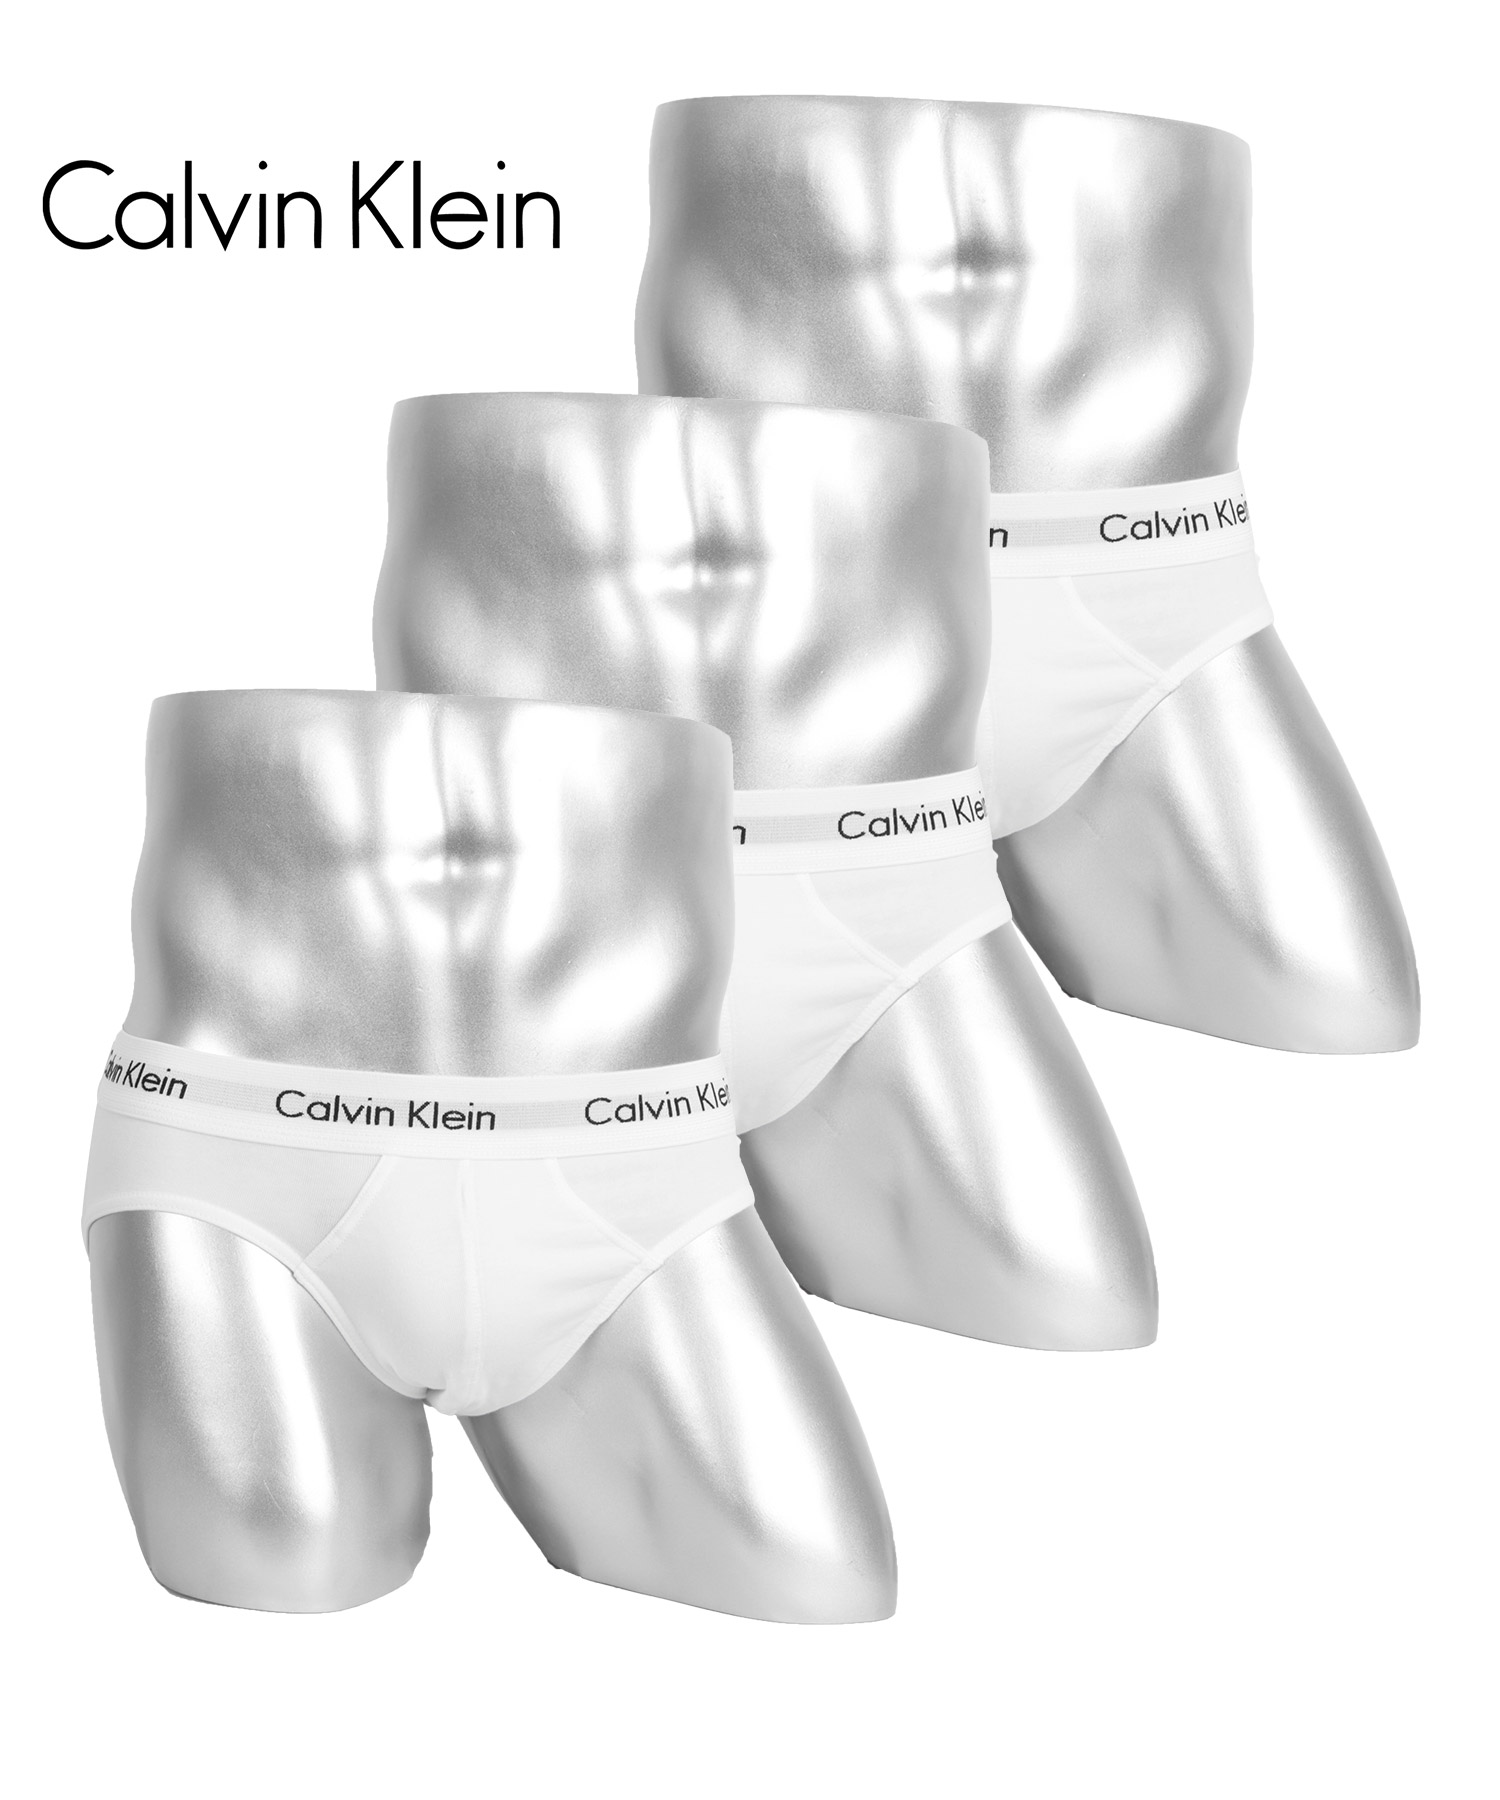 カルバンクライン Calvin Klein ブリーフ 3枚セット メンズ アンダーウェア 男性下着 綿混 コットン CK ロゴ 高級 ハイブランド